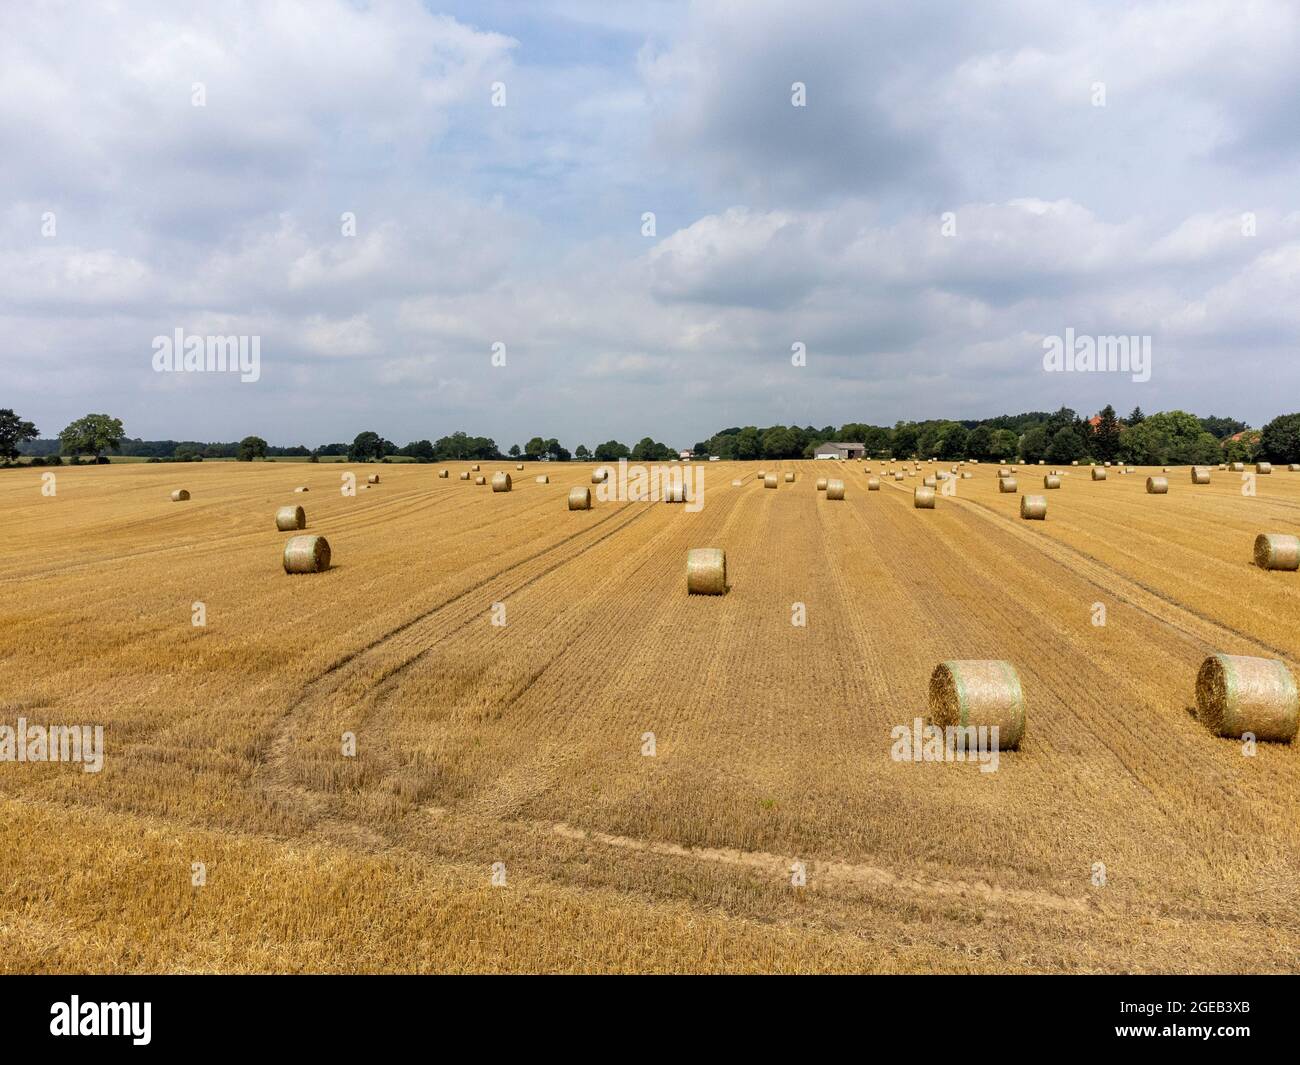 Strahballen auf einem abgeernteten Getreidefeld Stock Photo